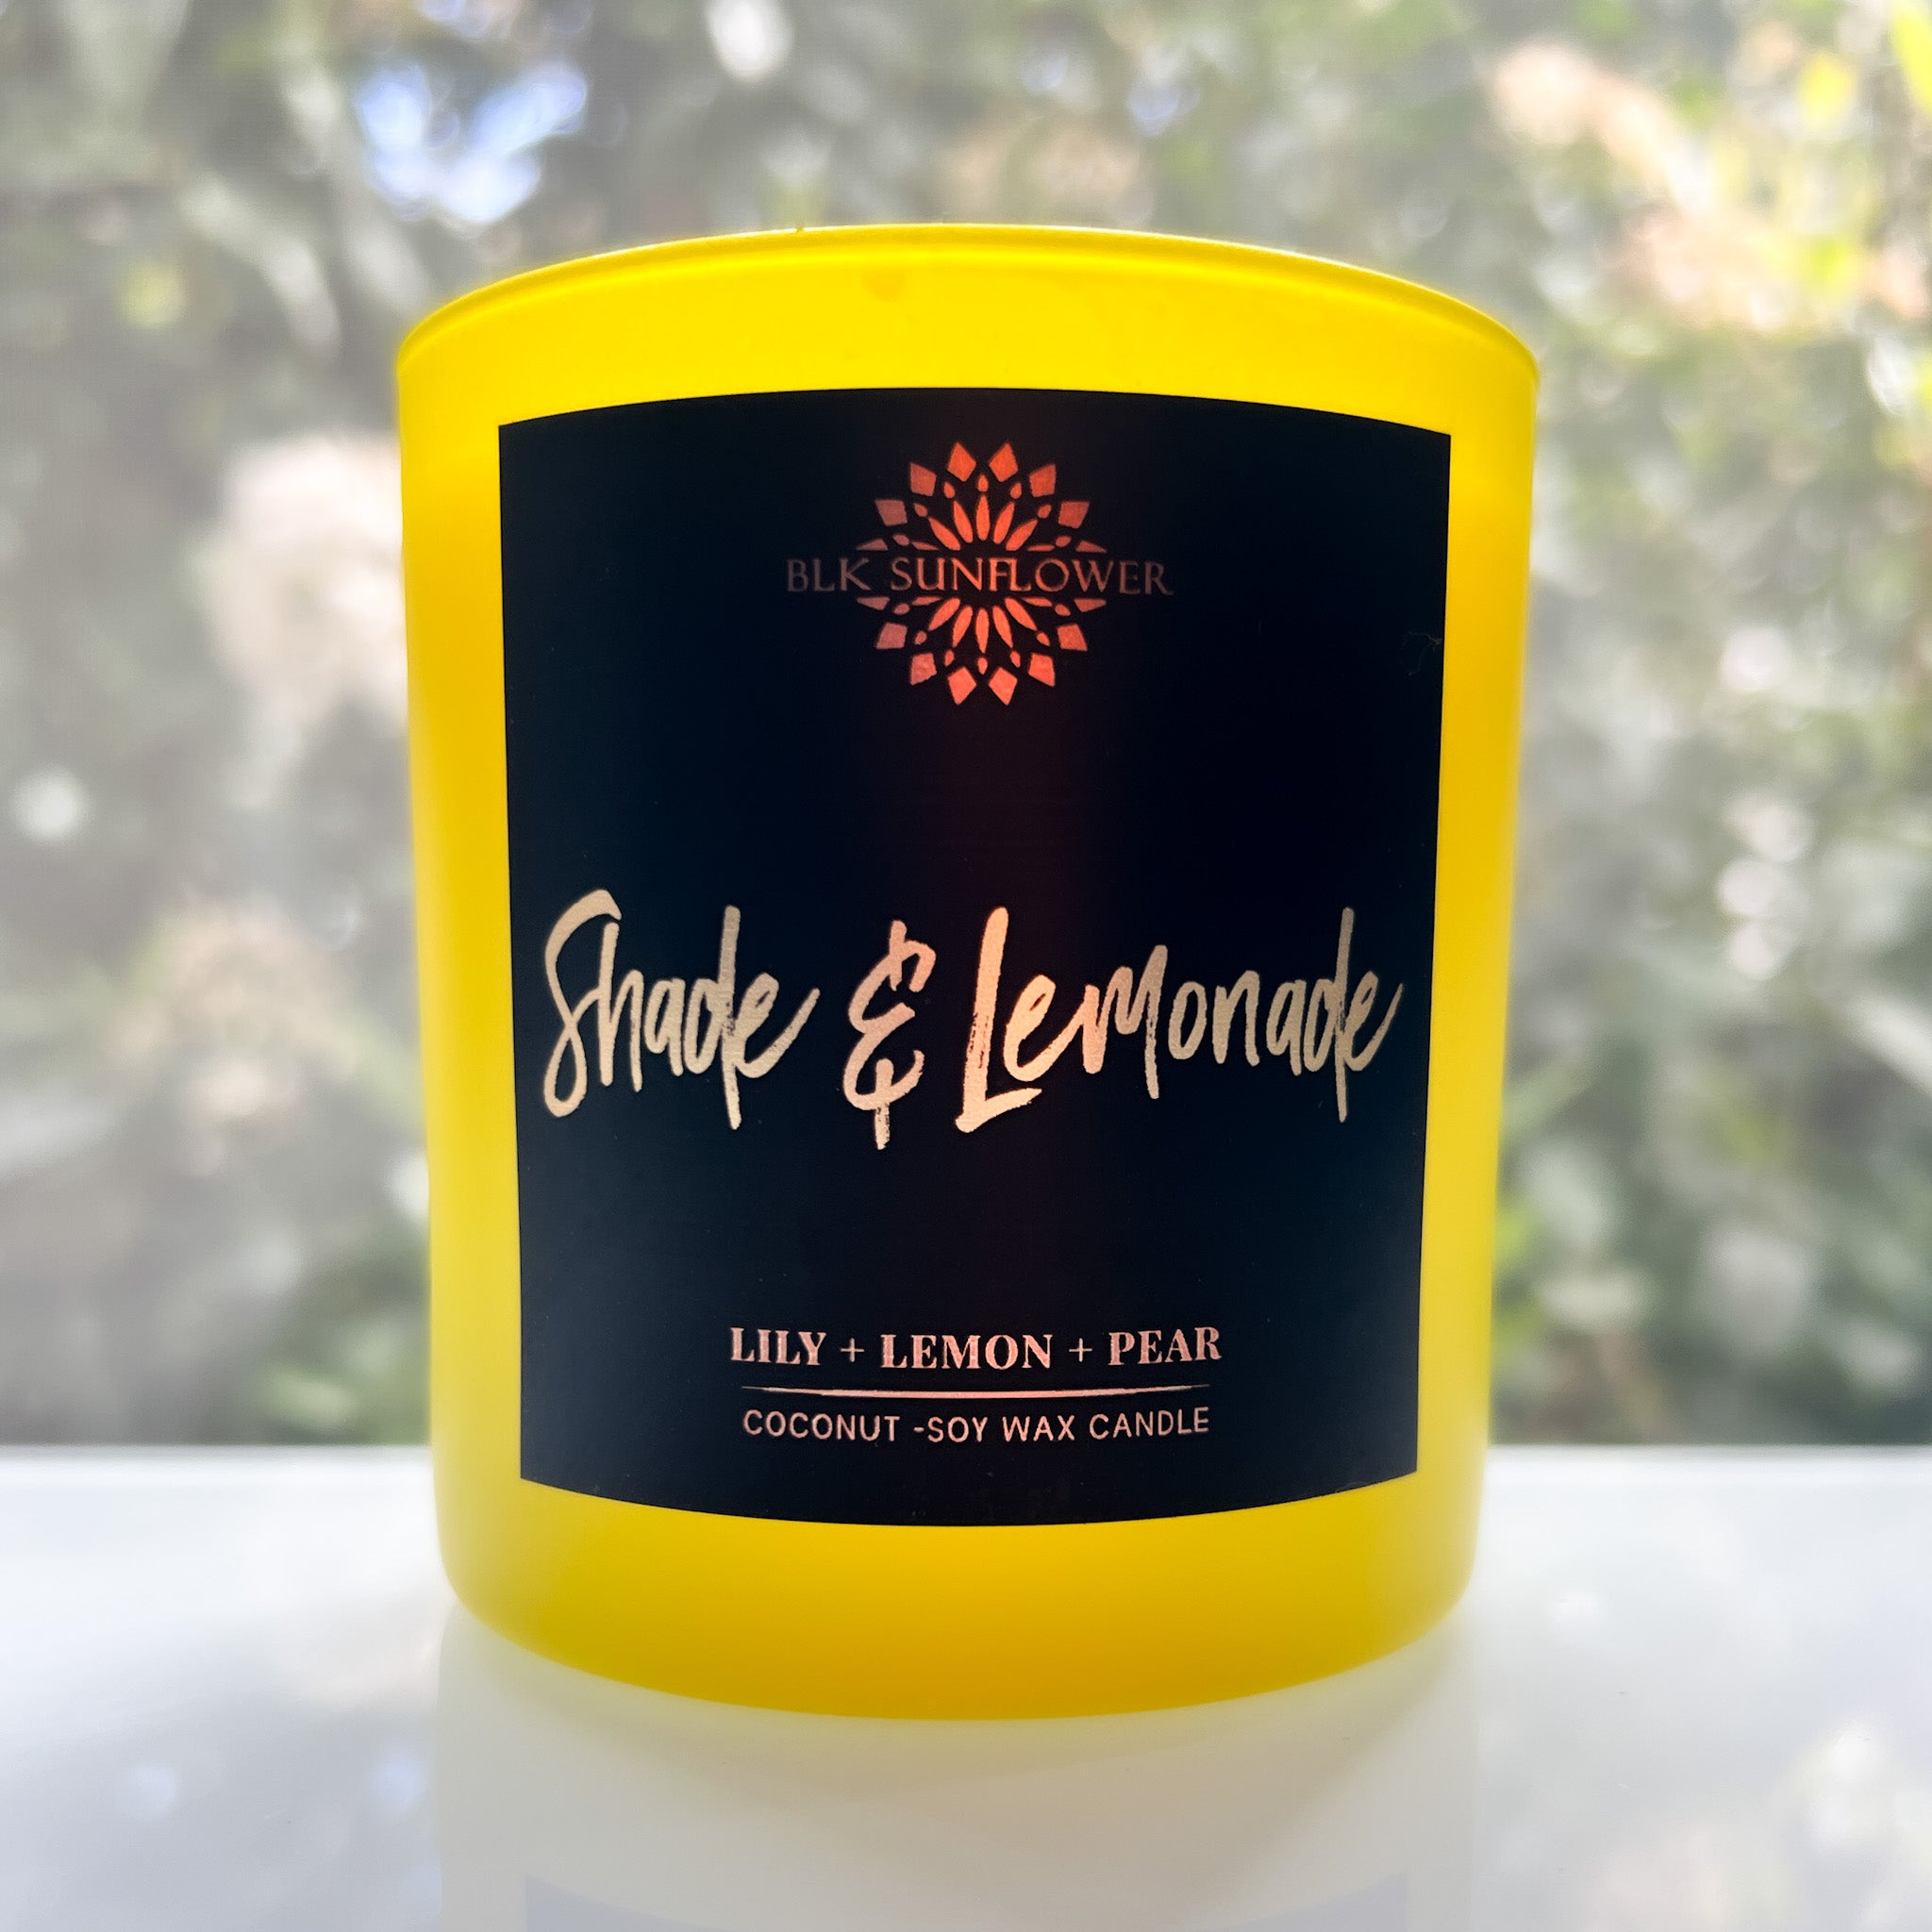 Shade & Lemonade